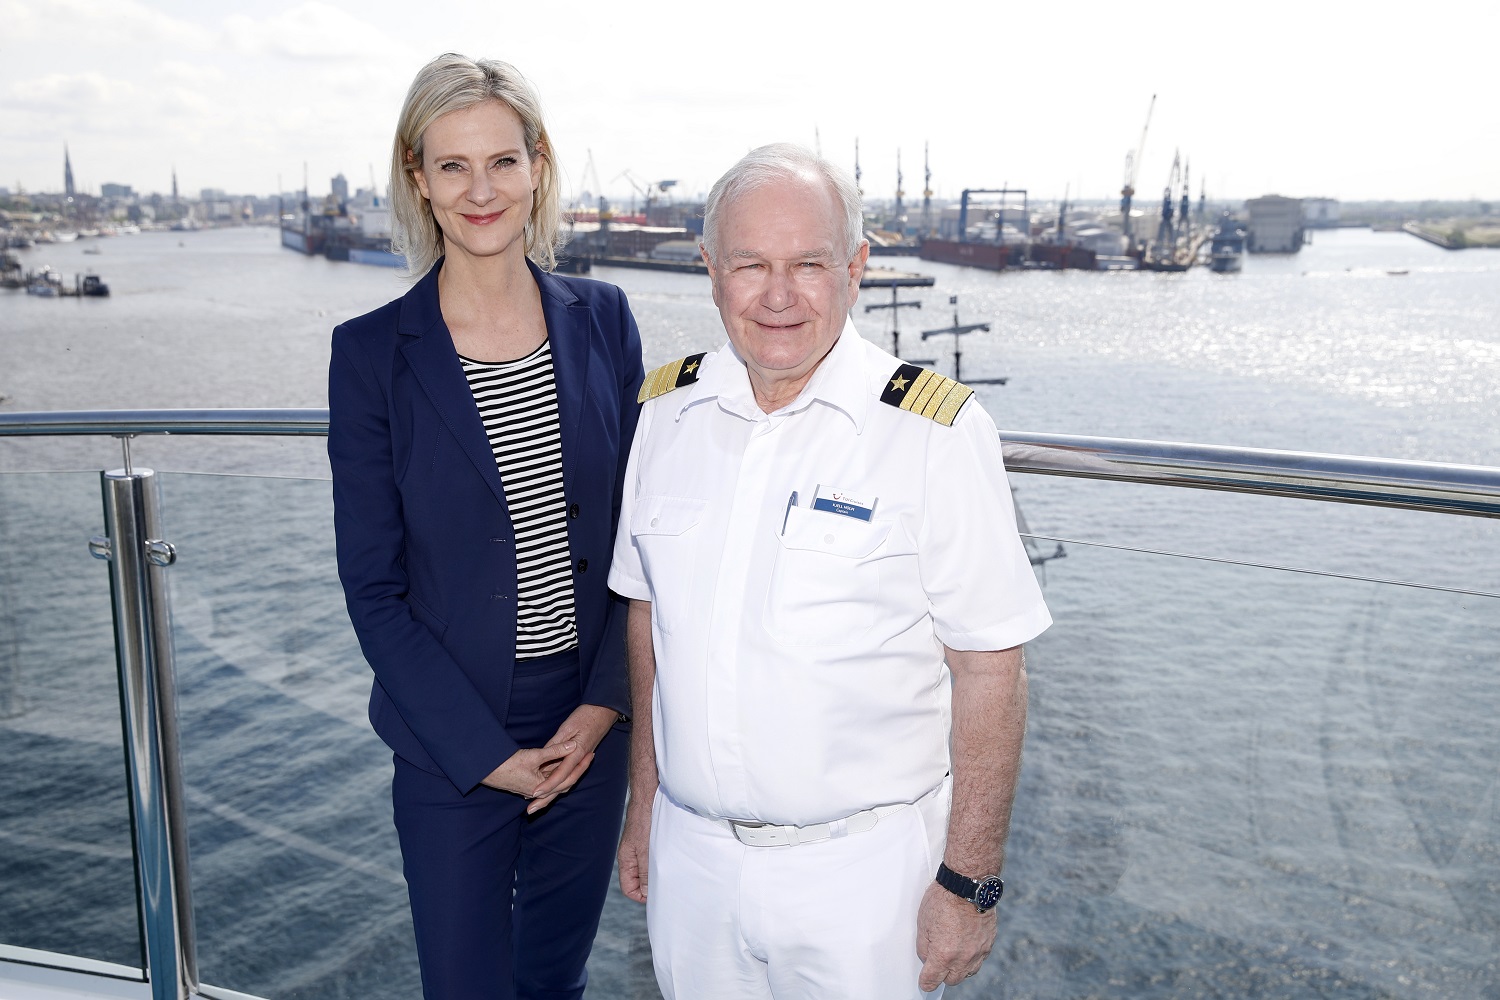 Wybcke Meier, CEO von TUI Cruises, mit Kjell Holm, Kapitän der neuen Mein Schiff 1(Photo by Franziska Krug/Getty Images for TUI Cruises)